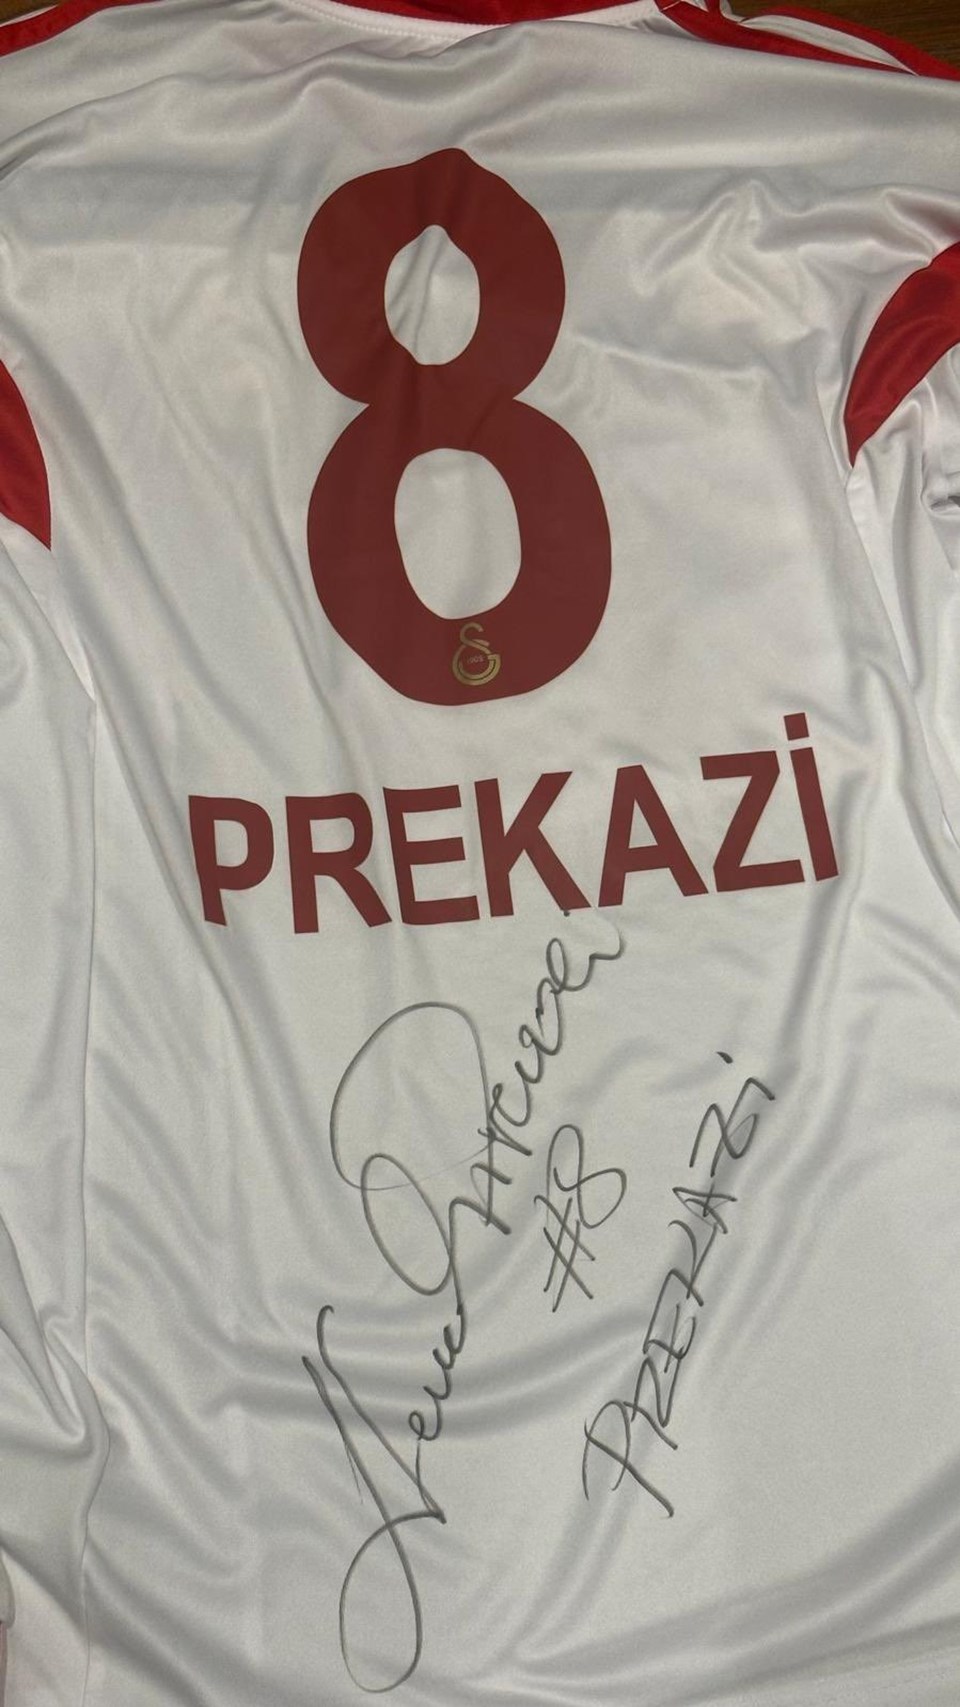 Galatasaray efsanesi Cevad Prekazi'nin forması depremzedeler için satıldı - 1